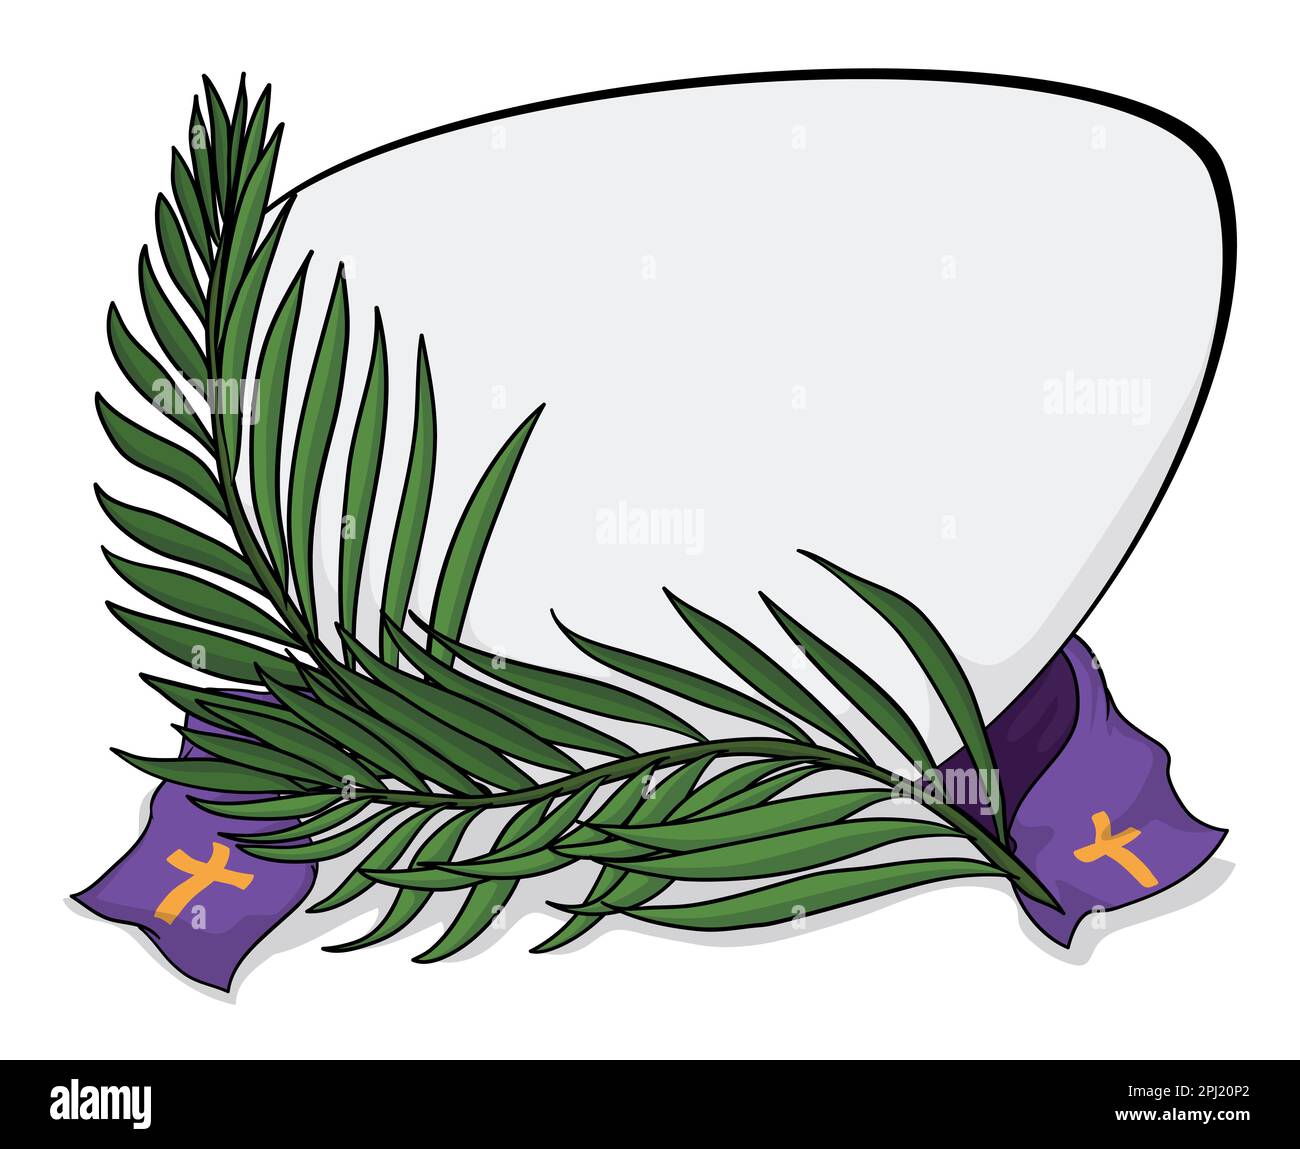 Vorlagendesign mit leerem Schild, grünen Palmenzweigen und lila Stola, dekoriert mit Kreuzen für Palm Sunday. Cartoon-Design. Stock Vektor